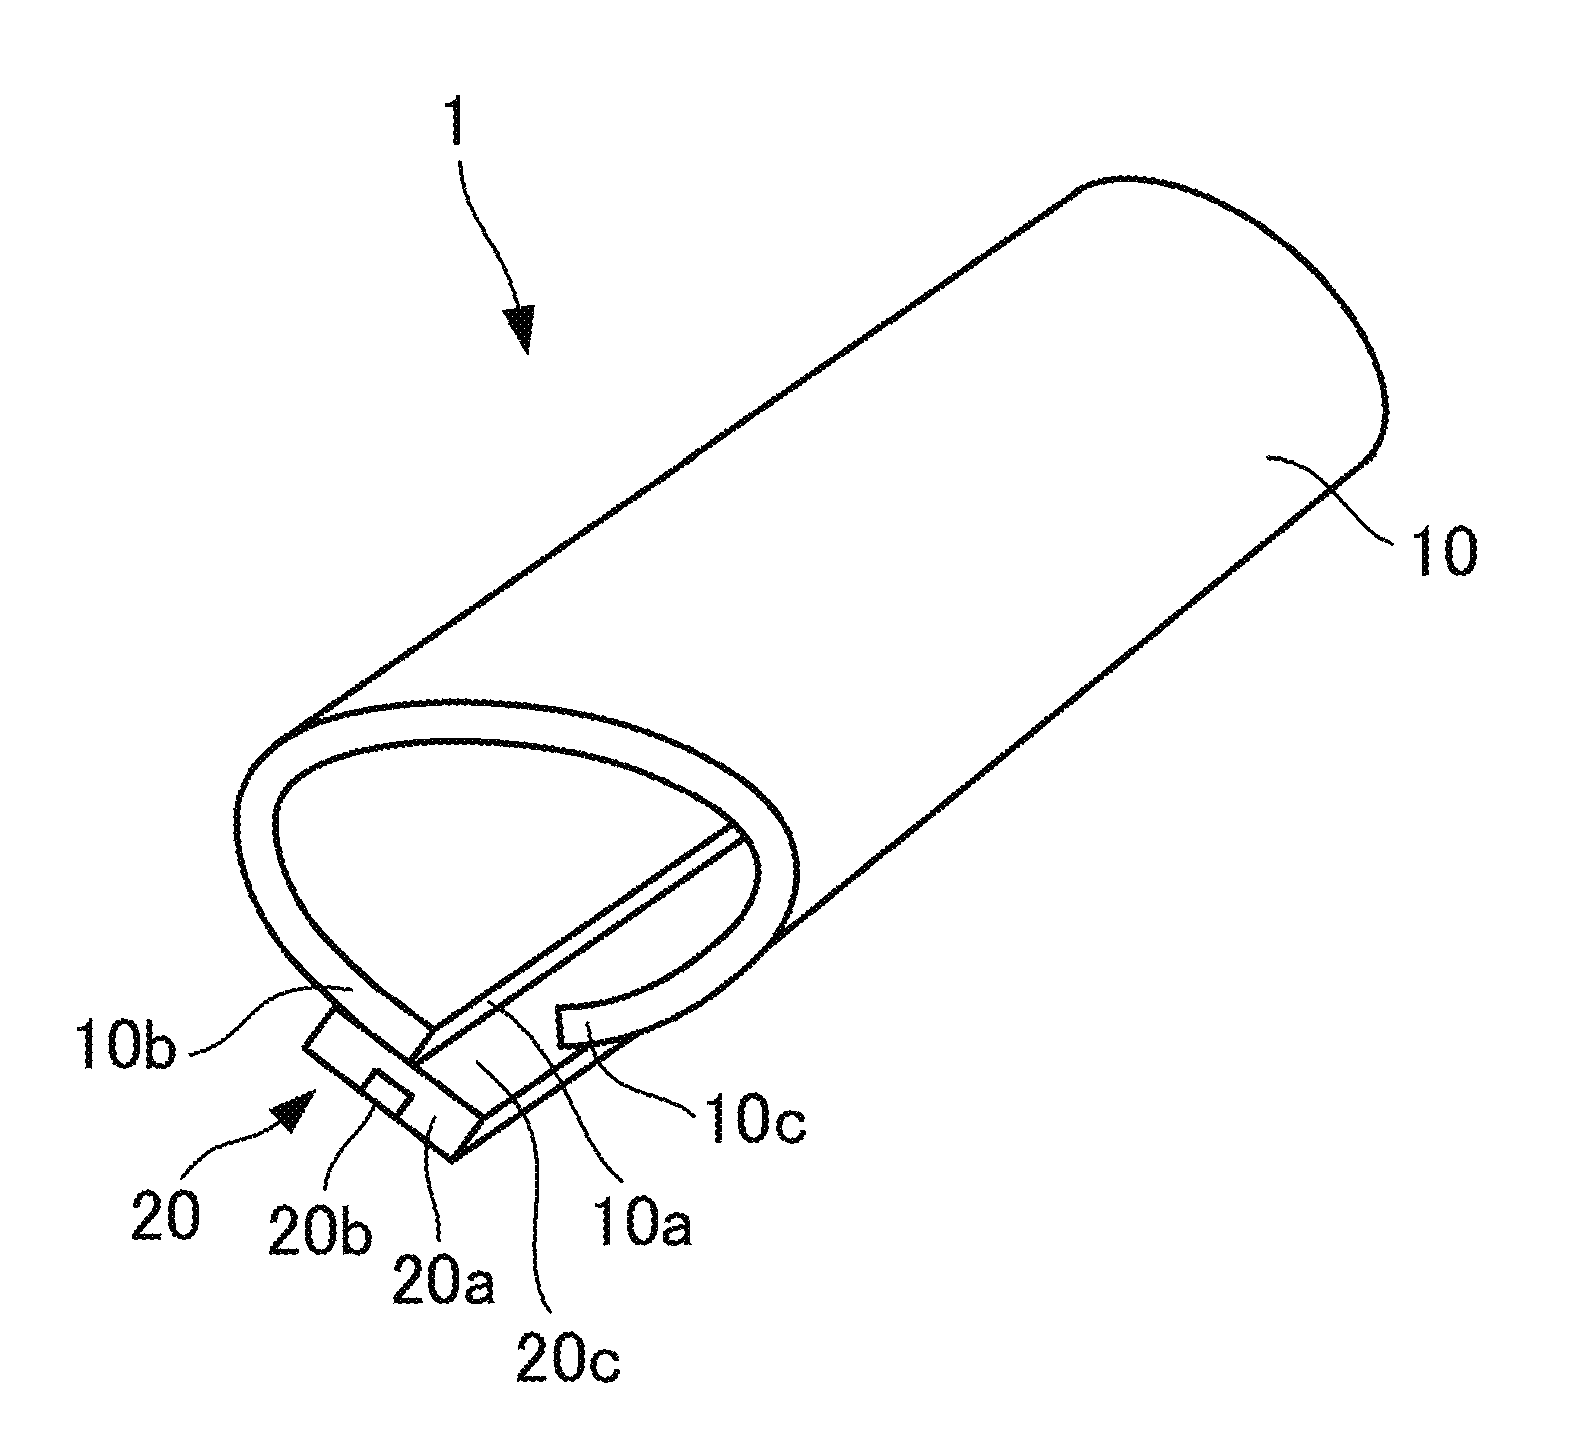 Heat-shrinkable slitted tube